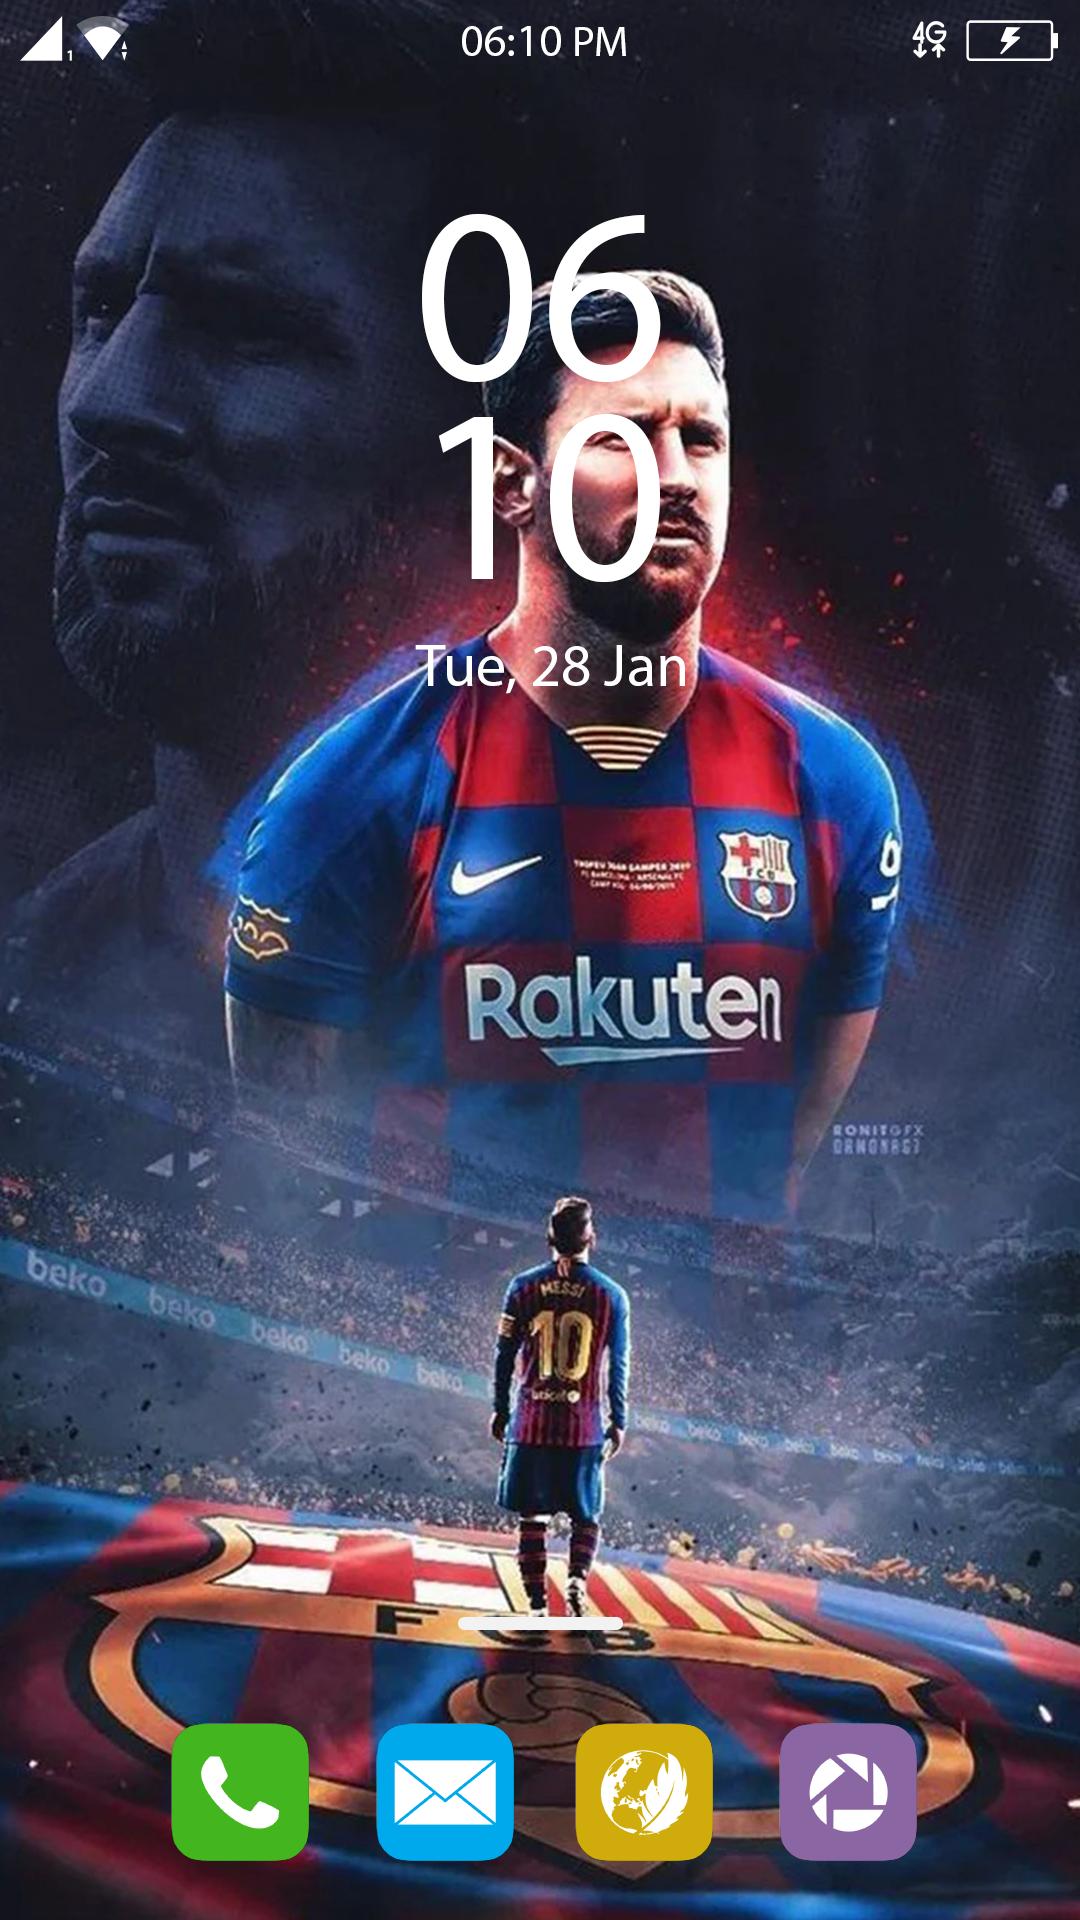 Hình nền Messi được thiết kế độc đáo và tinh tế cho người hâm mộ sự nghiệp bóng đá vĩ đại của anh. Xem nhiều mẫu hình ảnh chất lượng cao với chủ đề Messi, làm nền cho điện thoại hoặc máy tính của bạn.